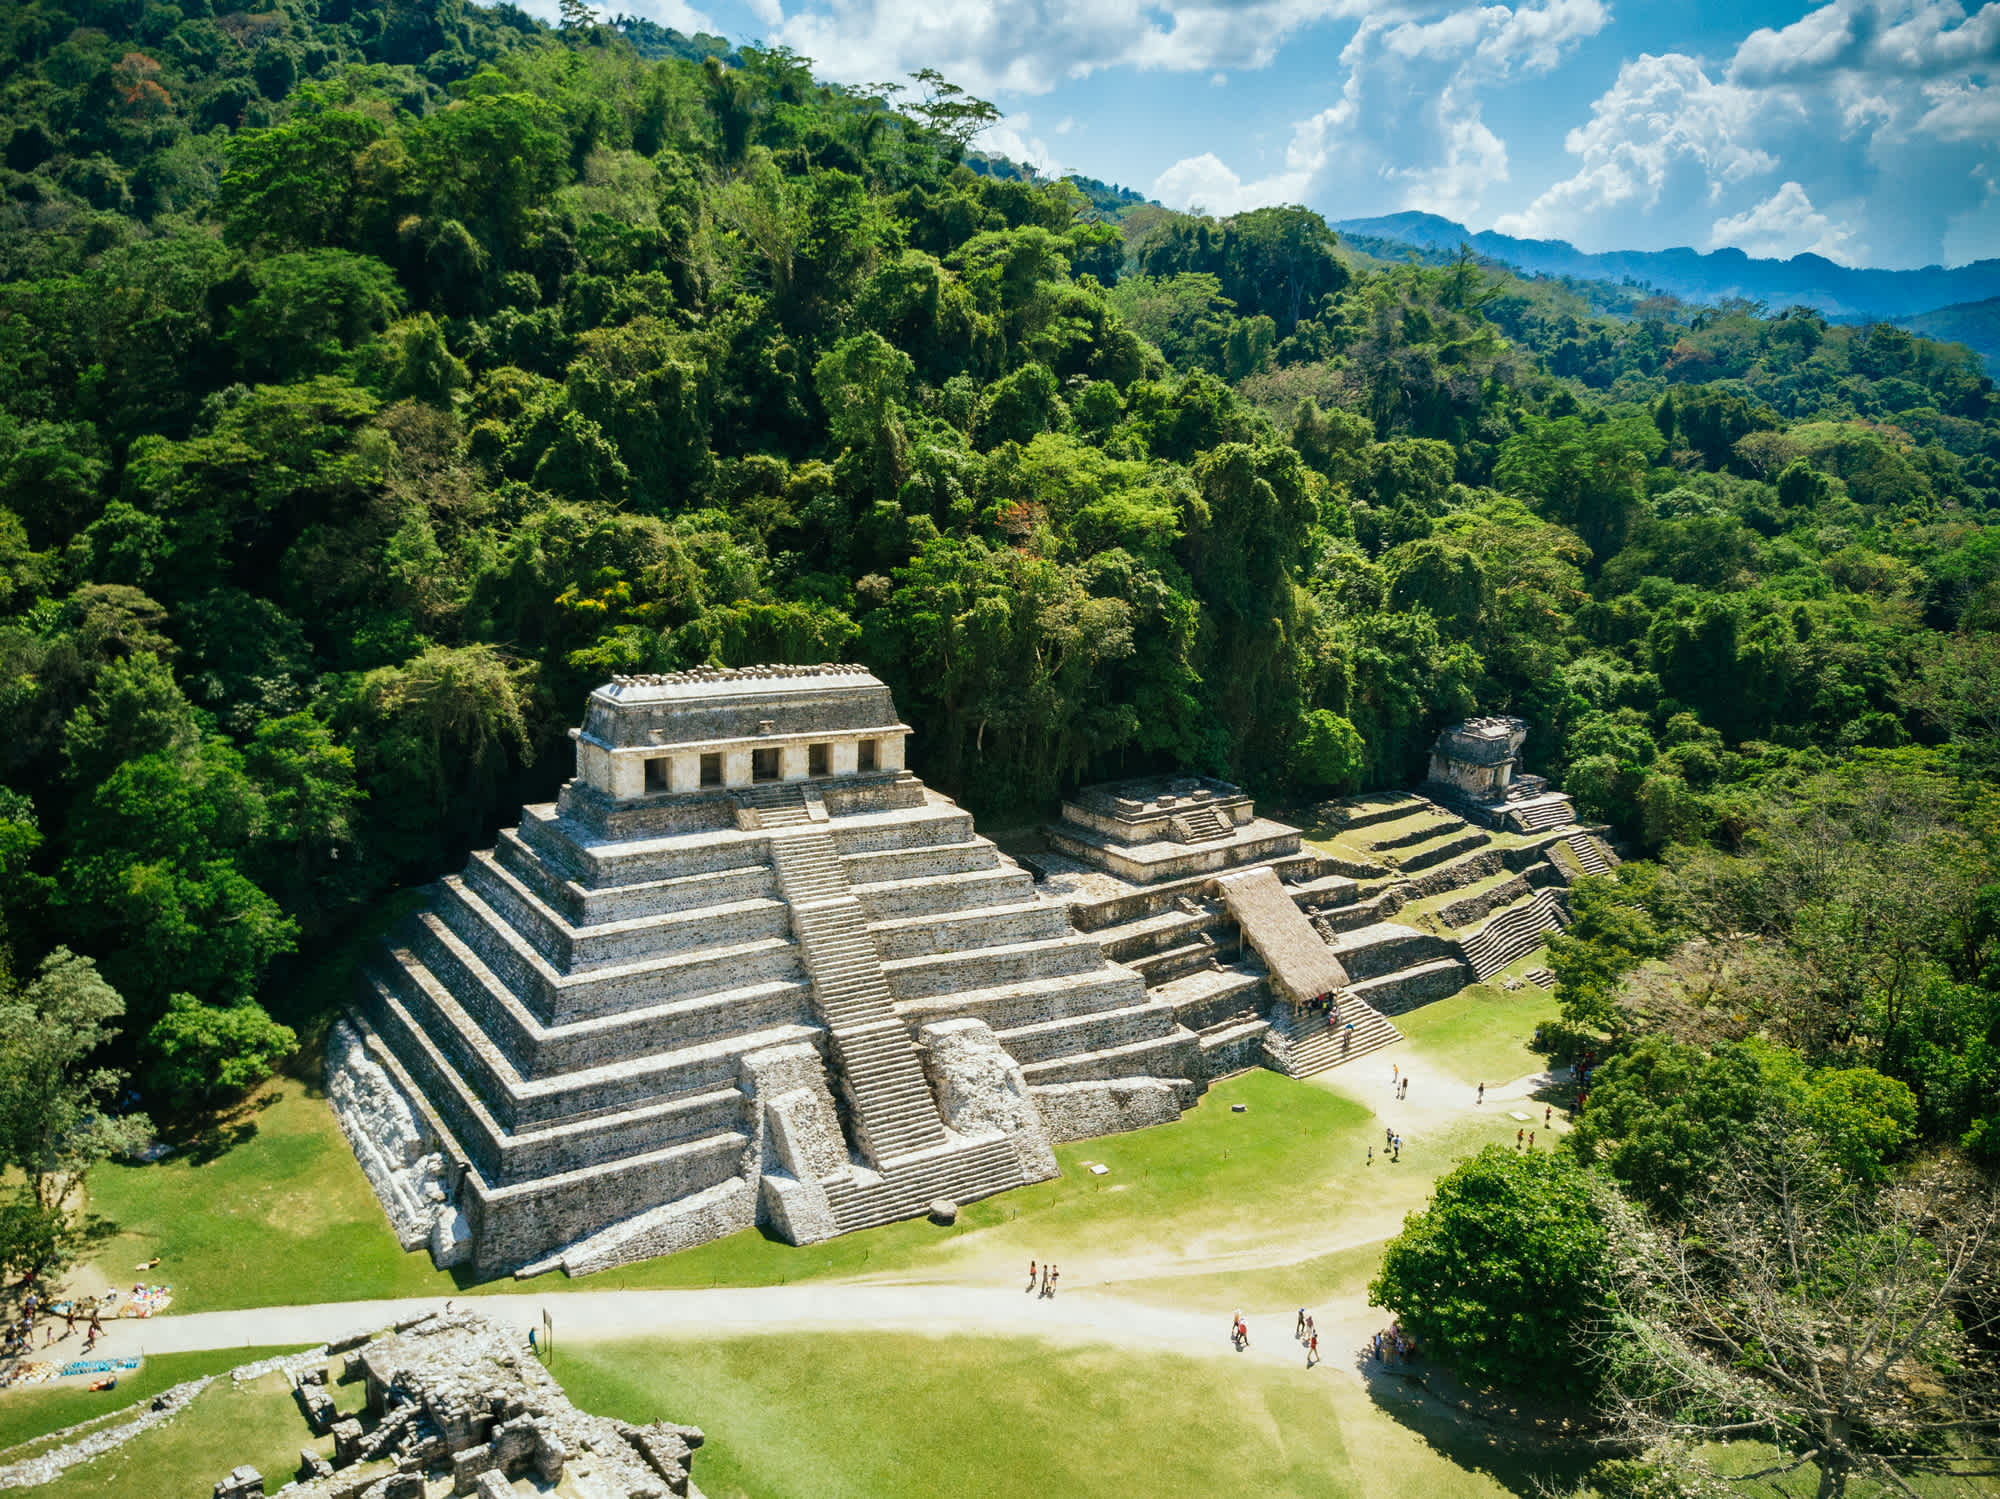 Vue aérienne du site archéologique de Palenque au Chiapas, Mexique.